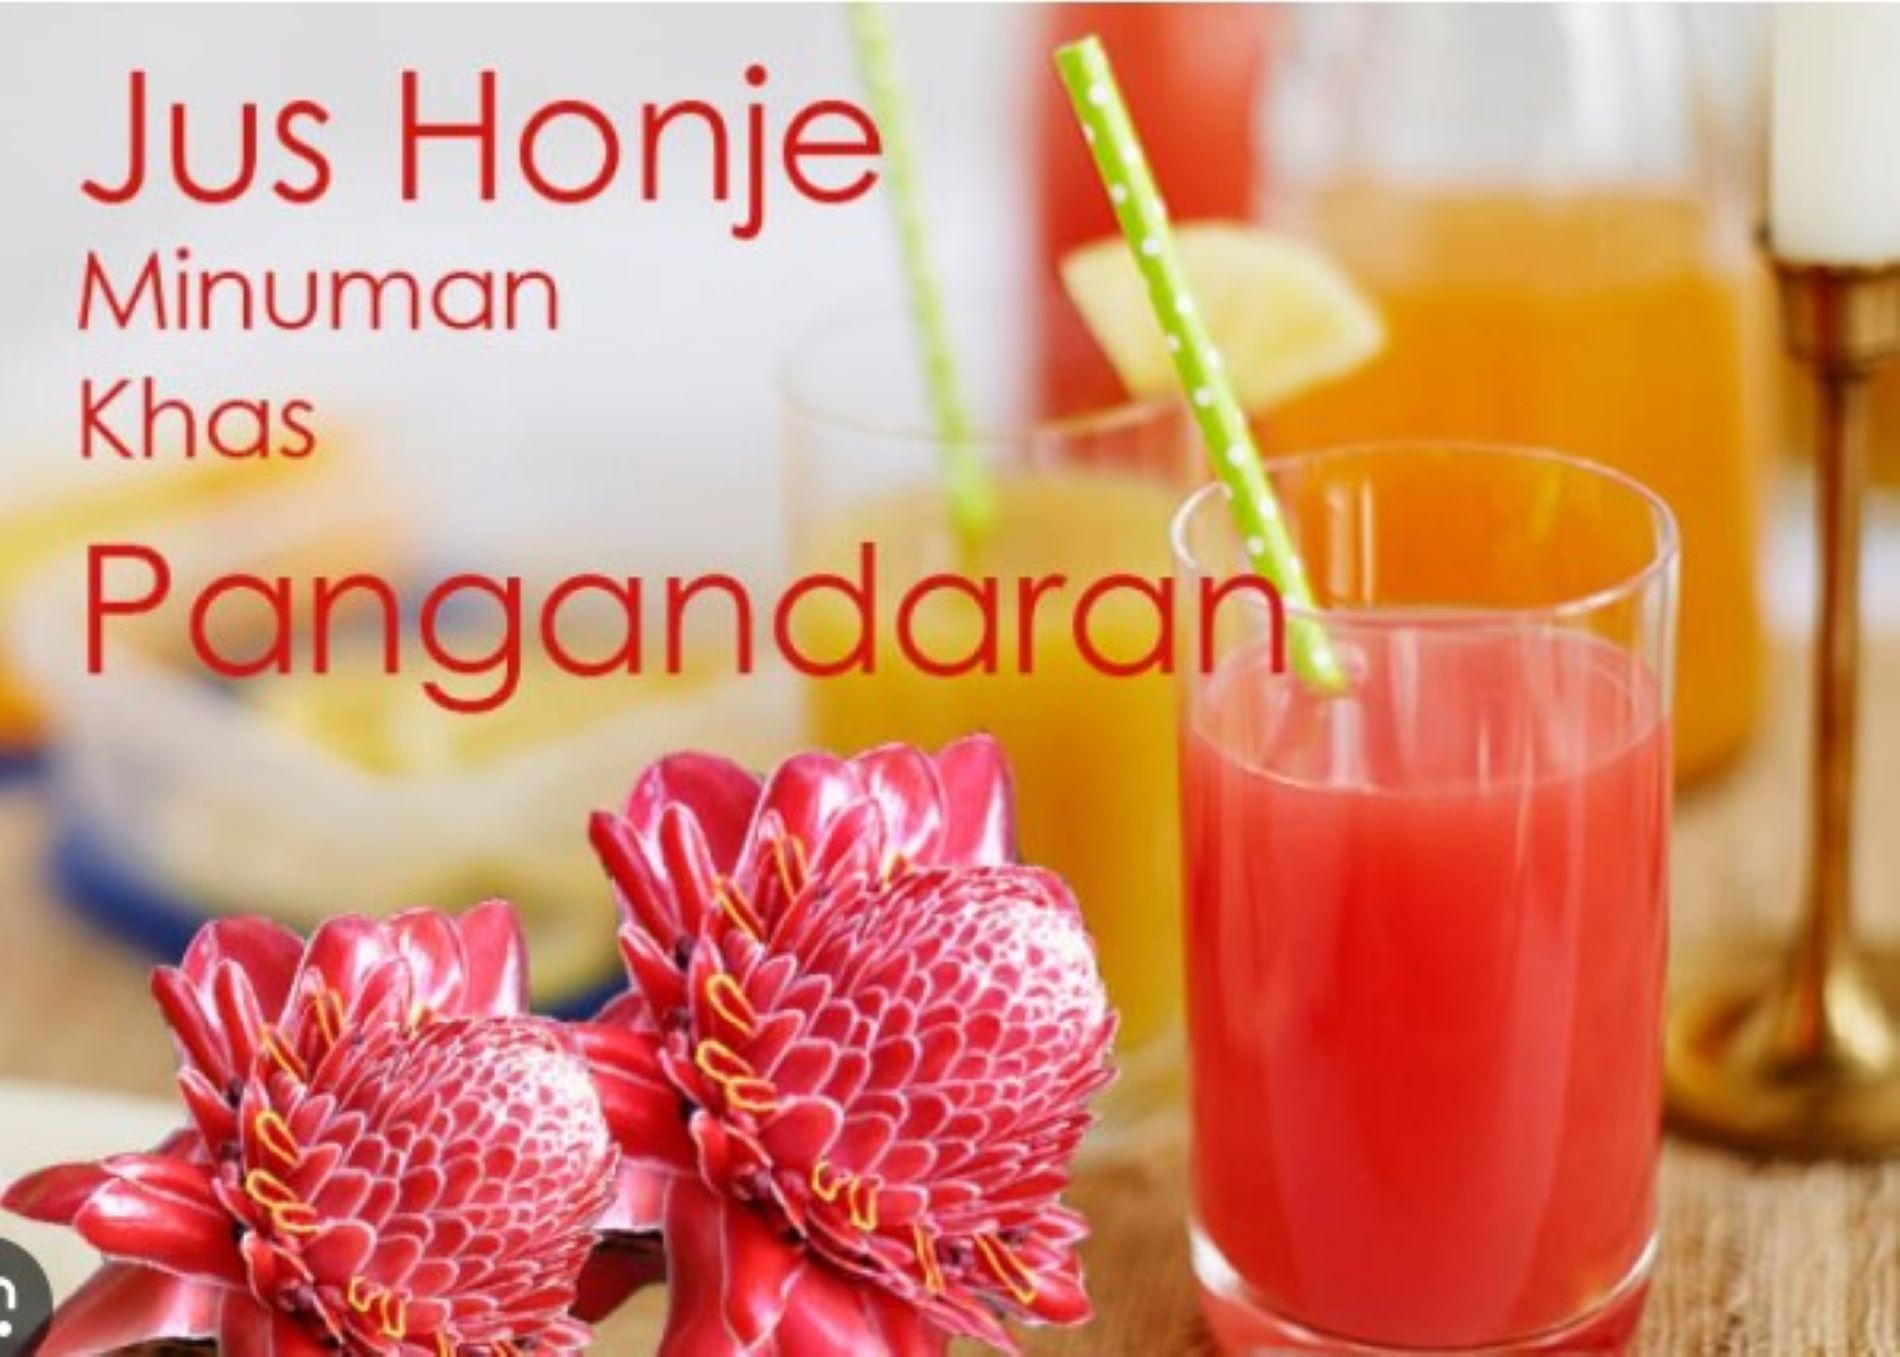 Jus honje atau kecombrang  bisa jadi pilihan segar untuk sarapan sehat di Pangandaran/